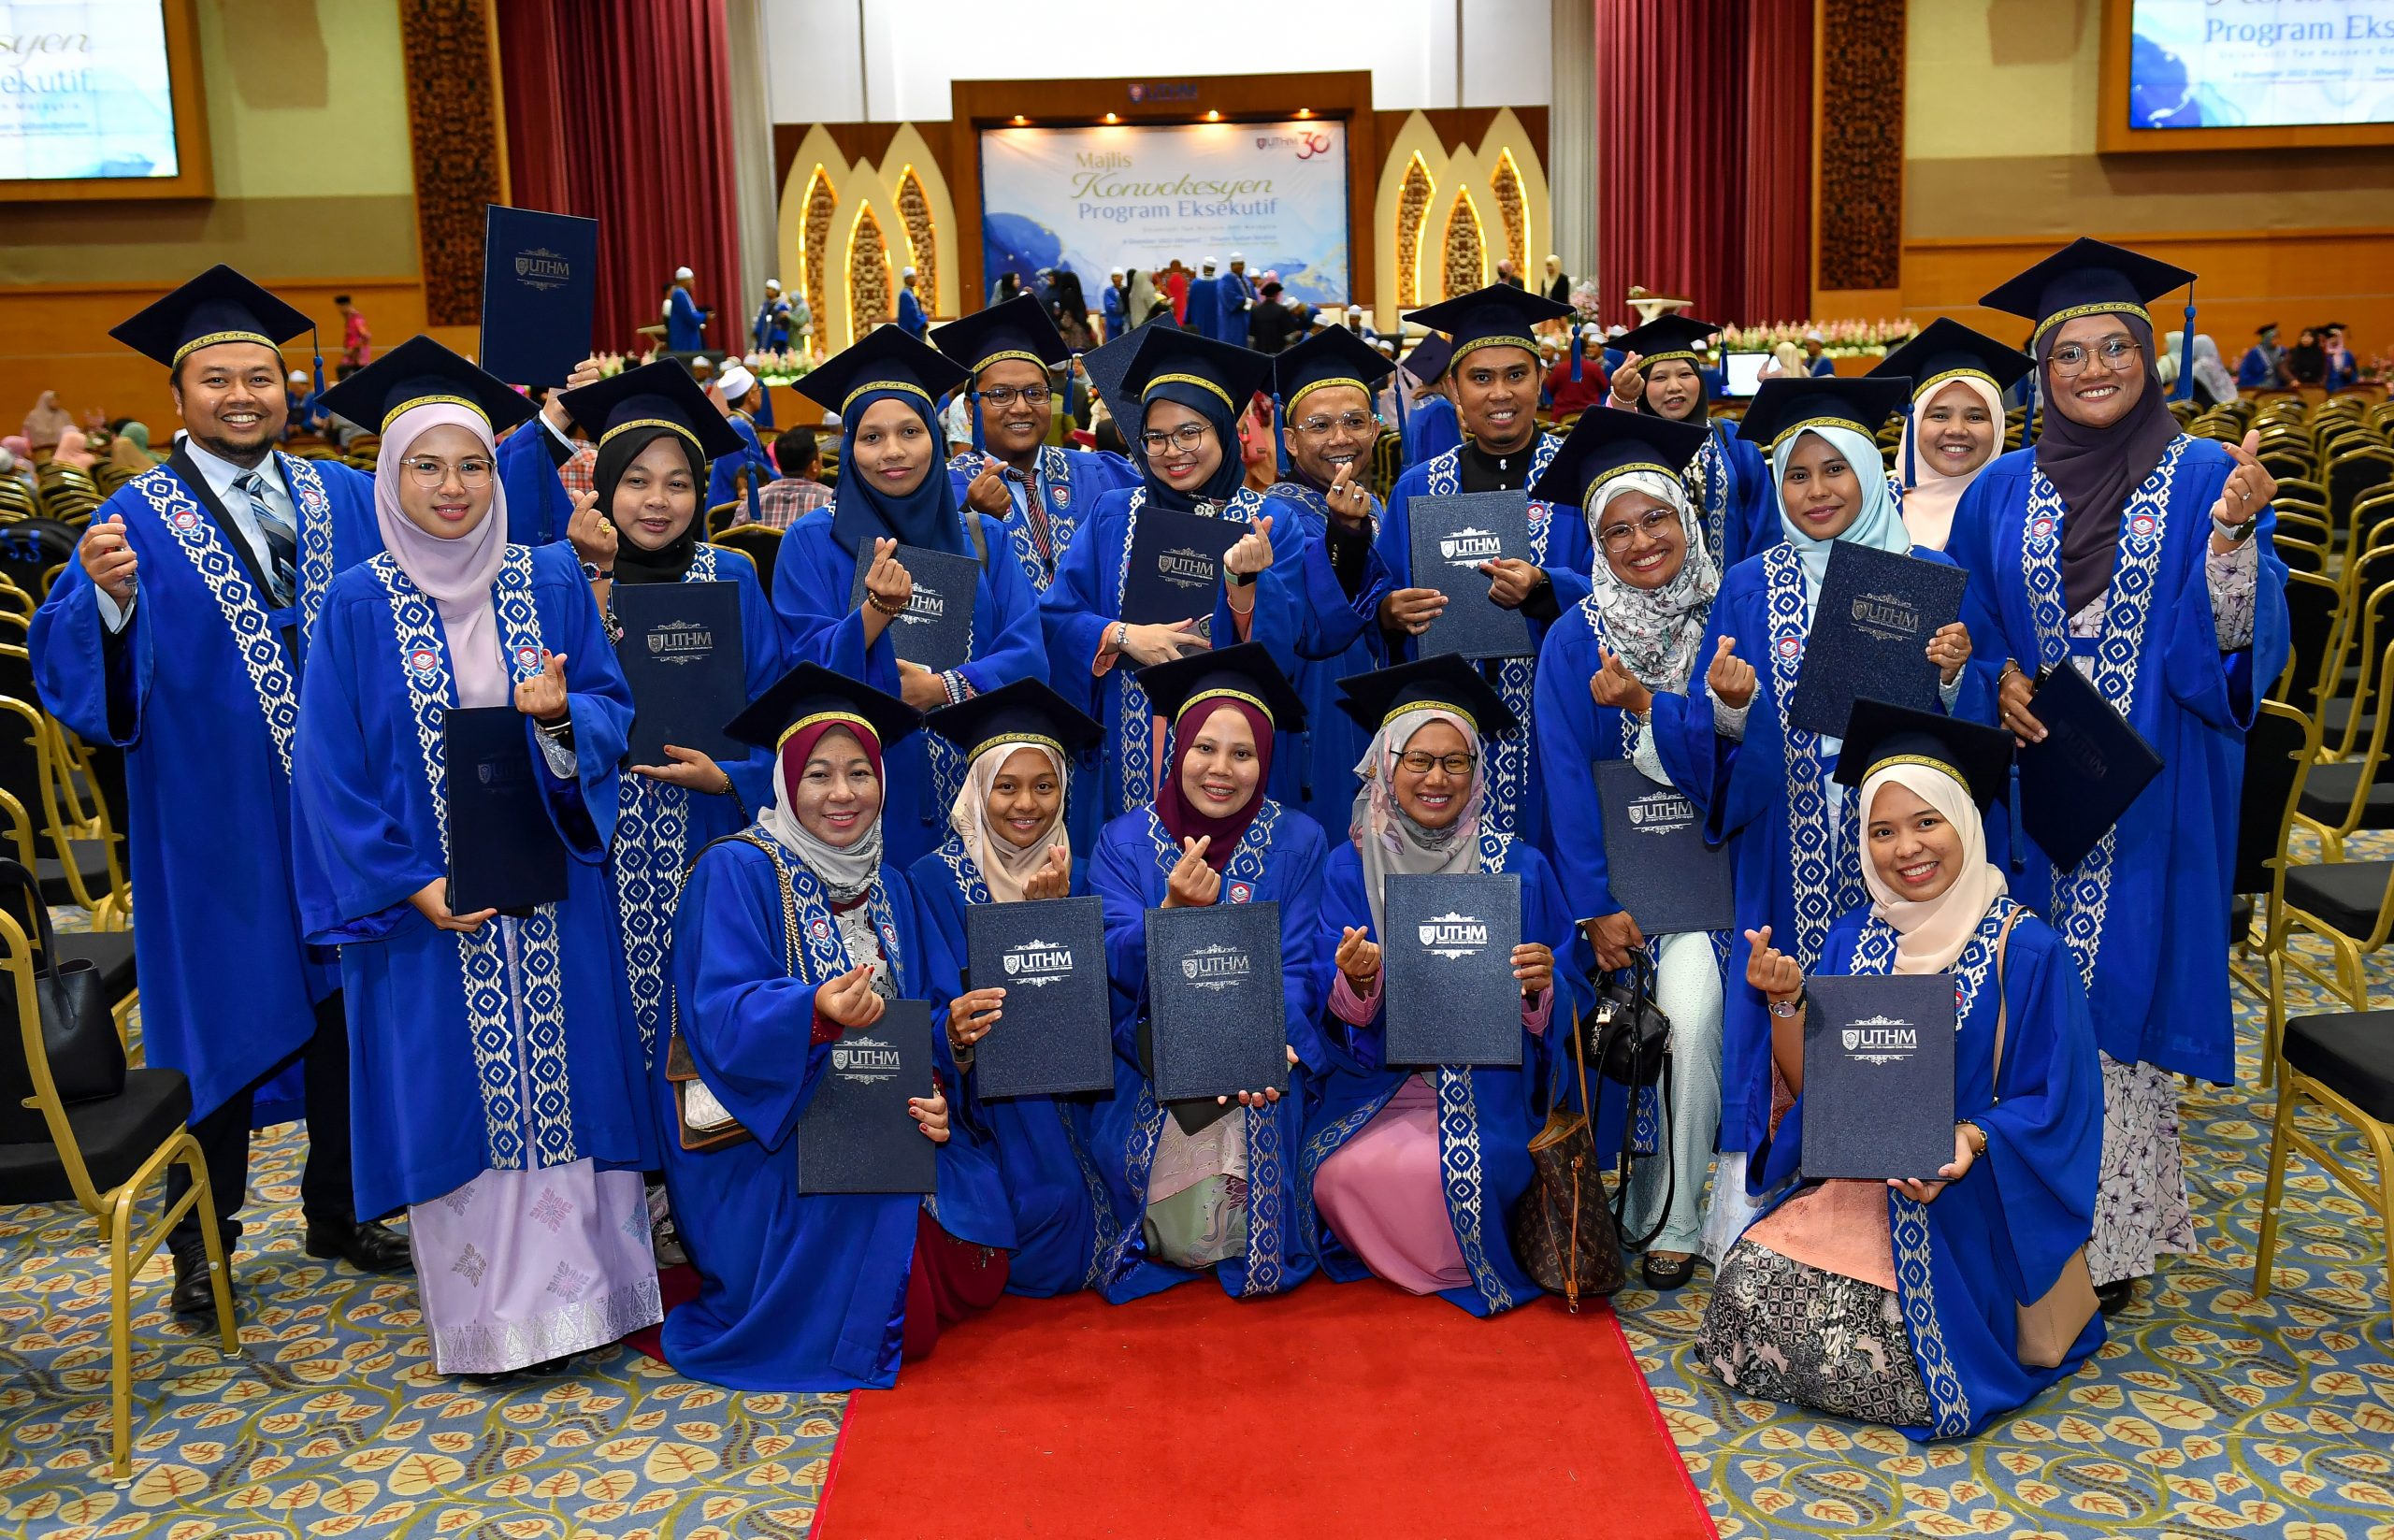 126 graduan dirai dalam Majlis Konvokesyen Program Eksekutif UTHM